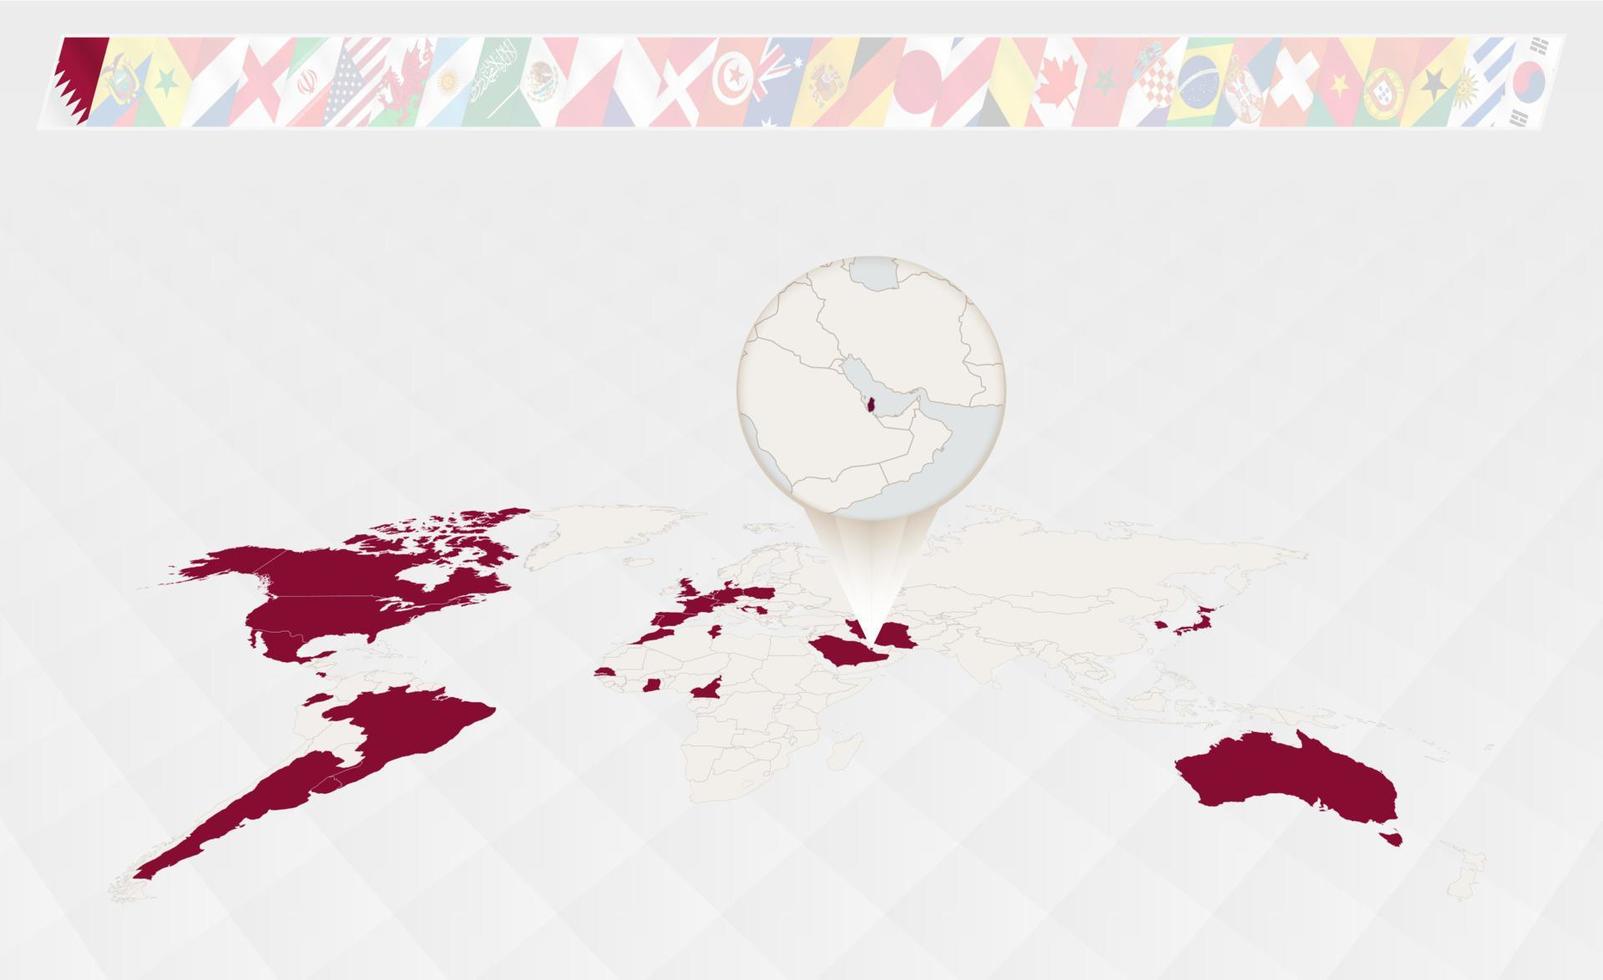 ampliar o mapa do qatar selecionado no mapa mundial em perspectiva, infográficos sobre os participantes do torneio de futebol. vetor